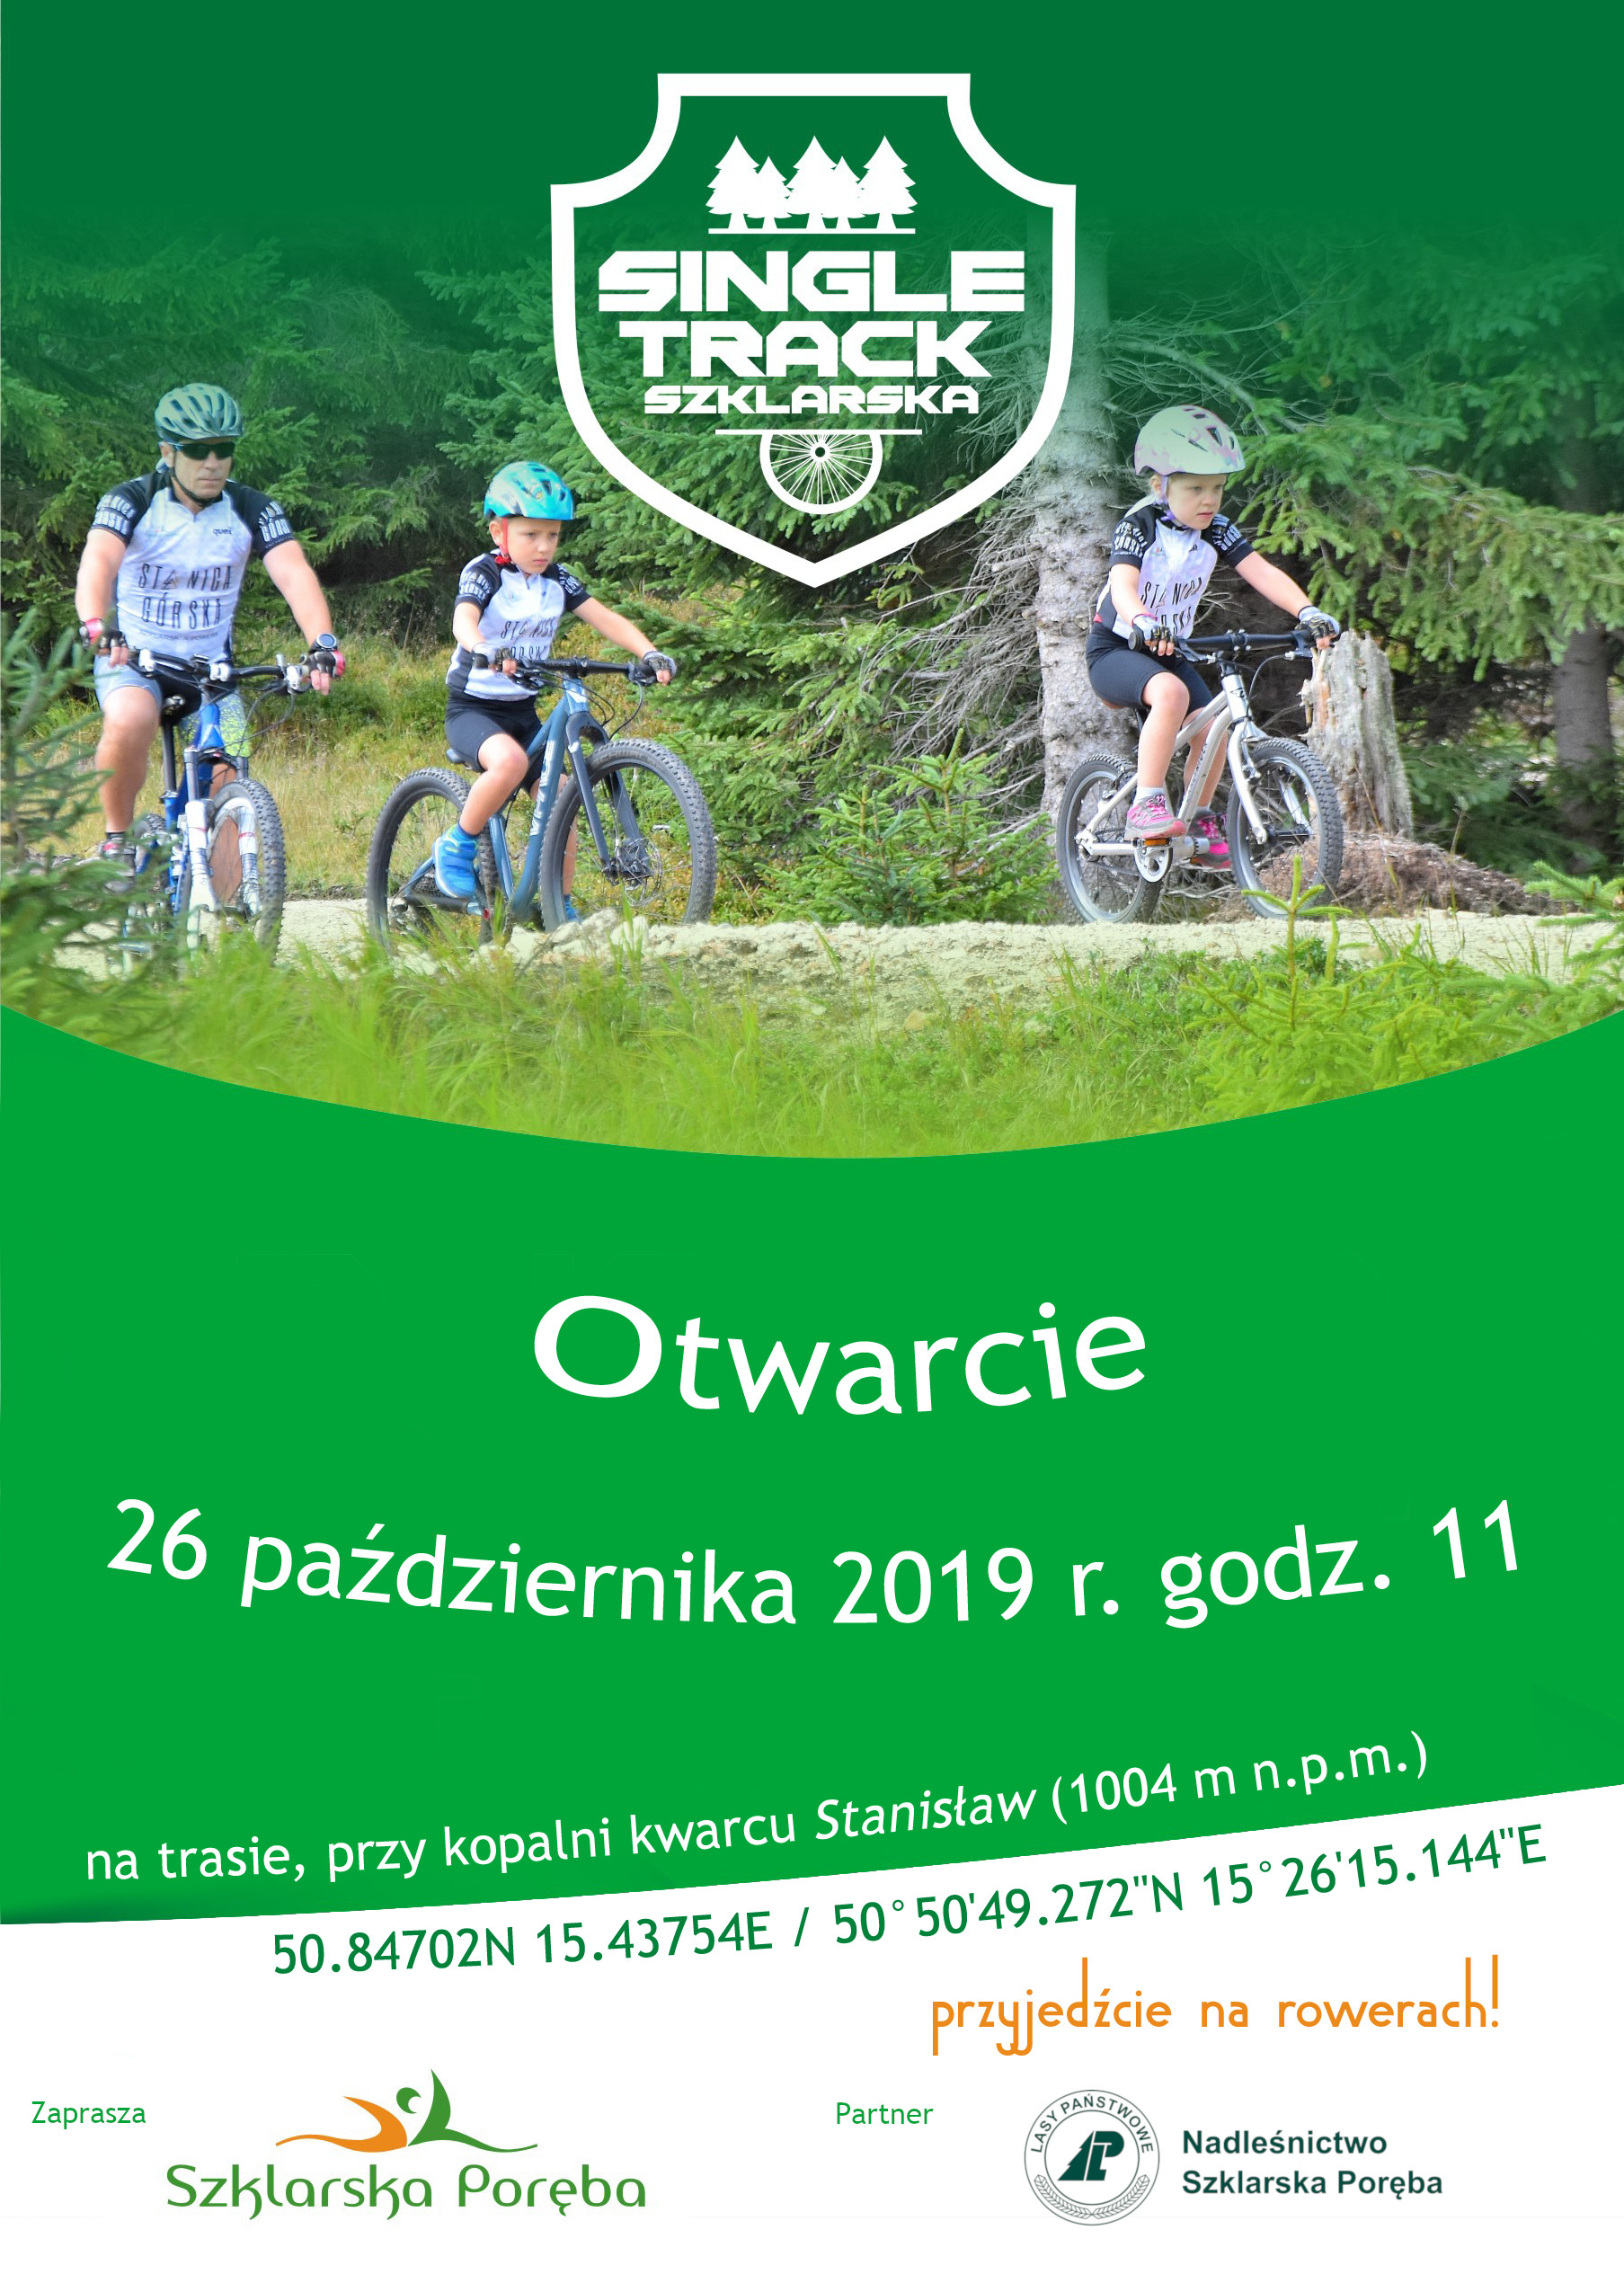 Single Track Szklarska - otwarcie 26 pazdziernika 2019